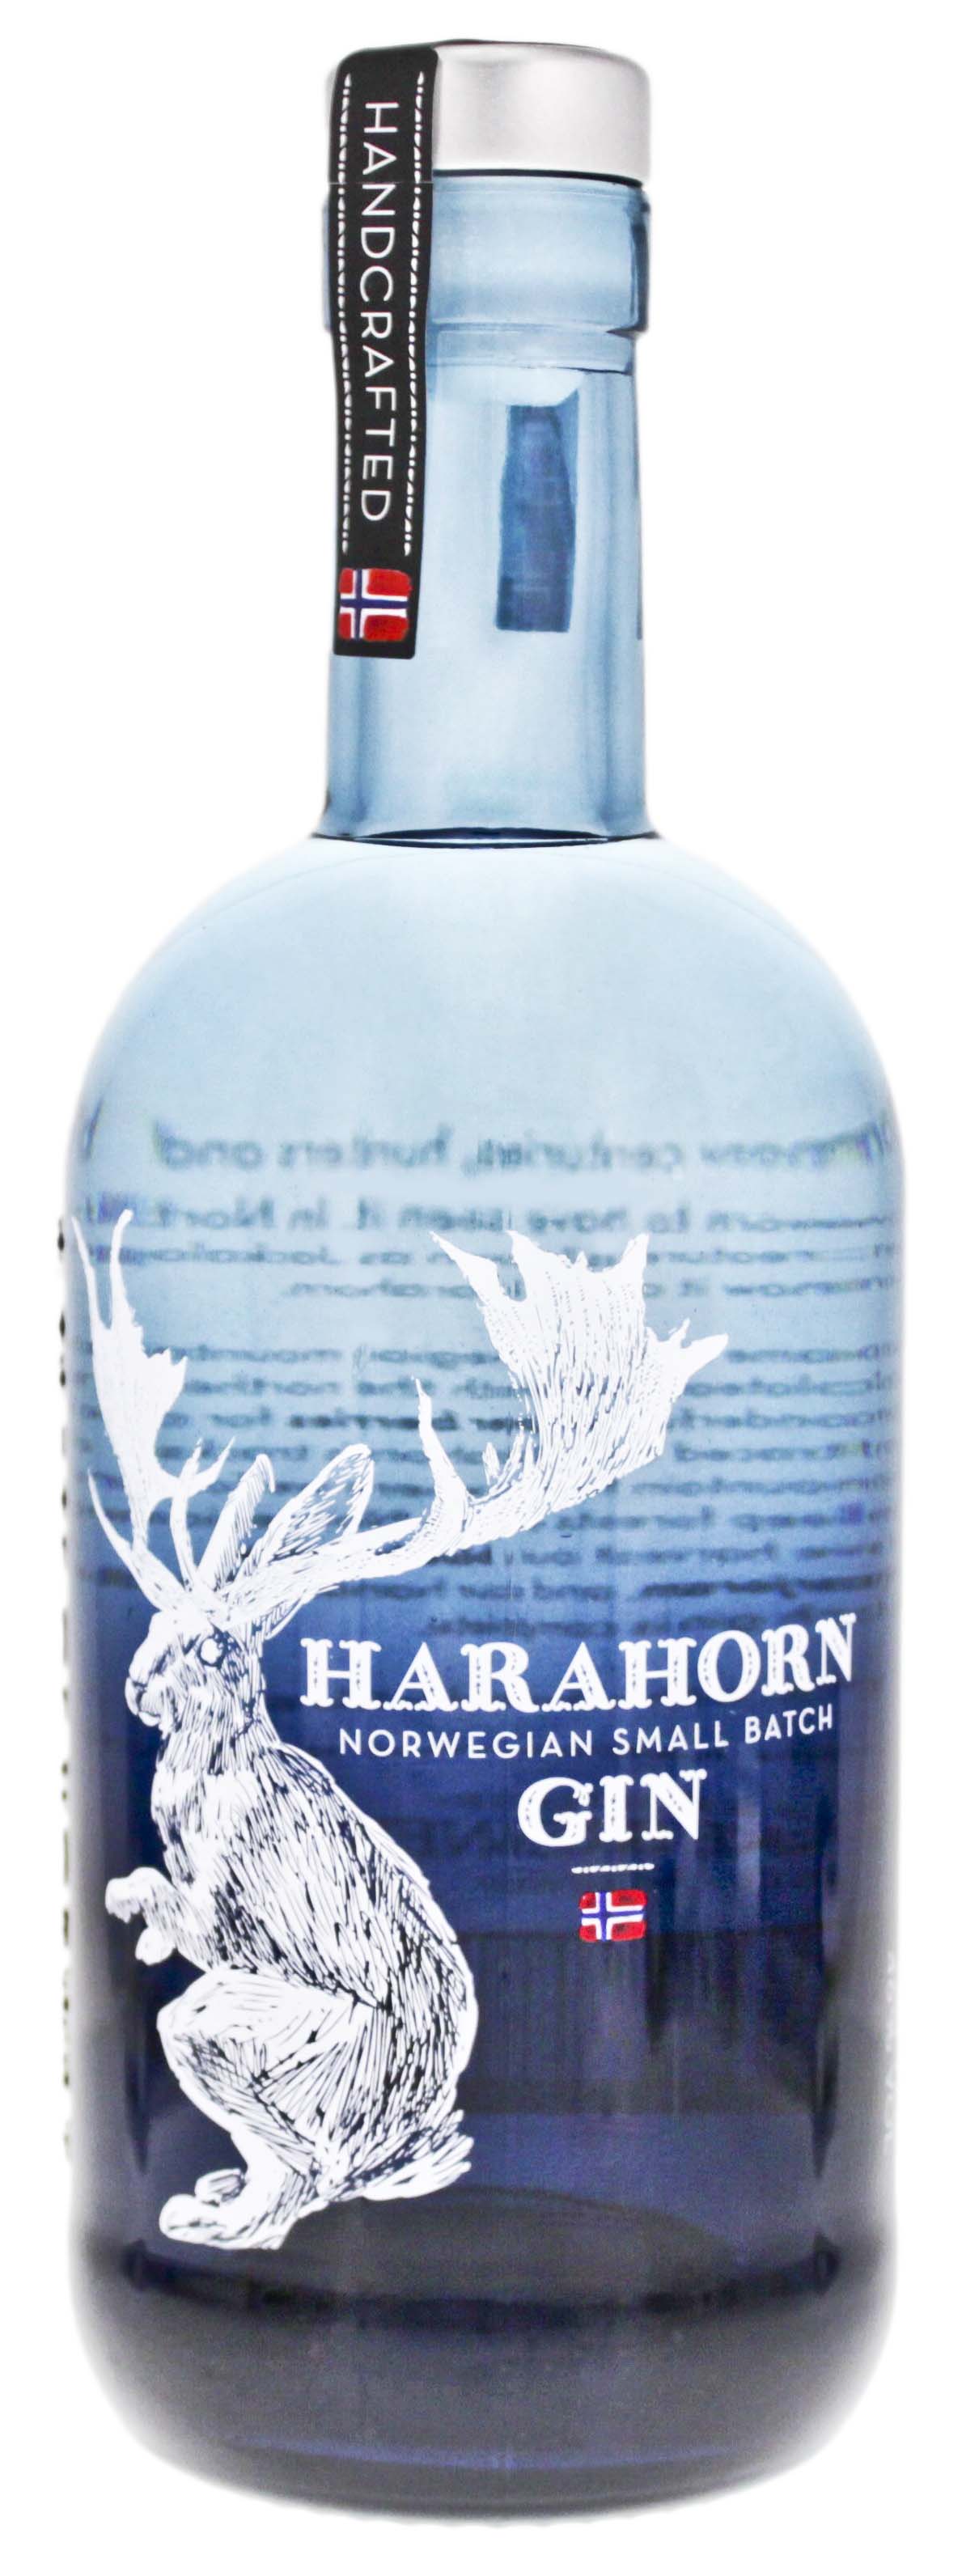 Harahorn Gin 0,5L